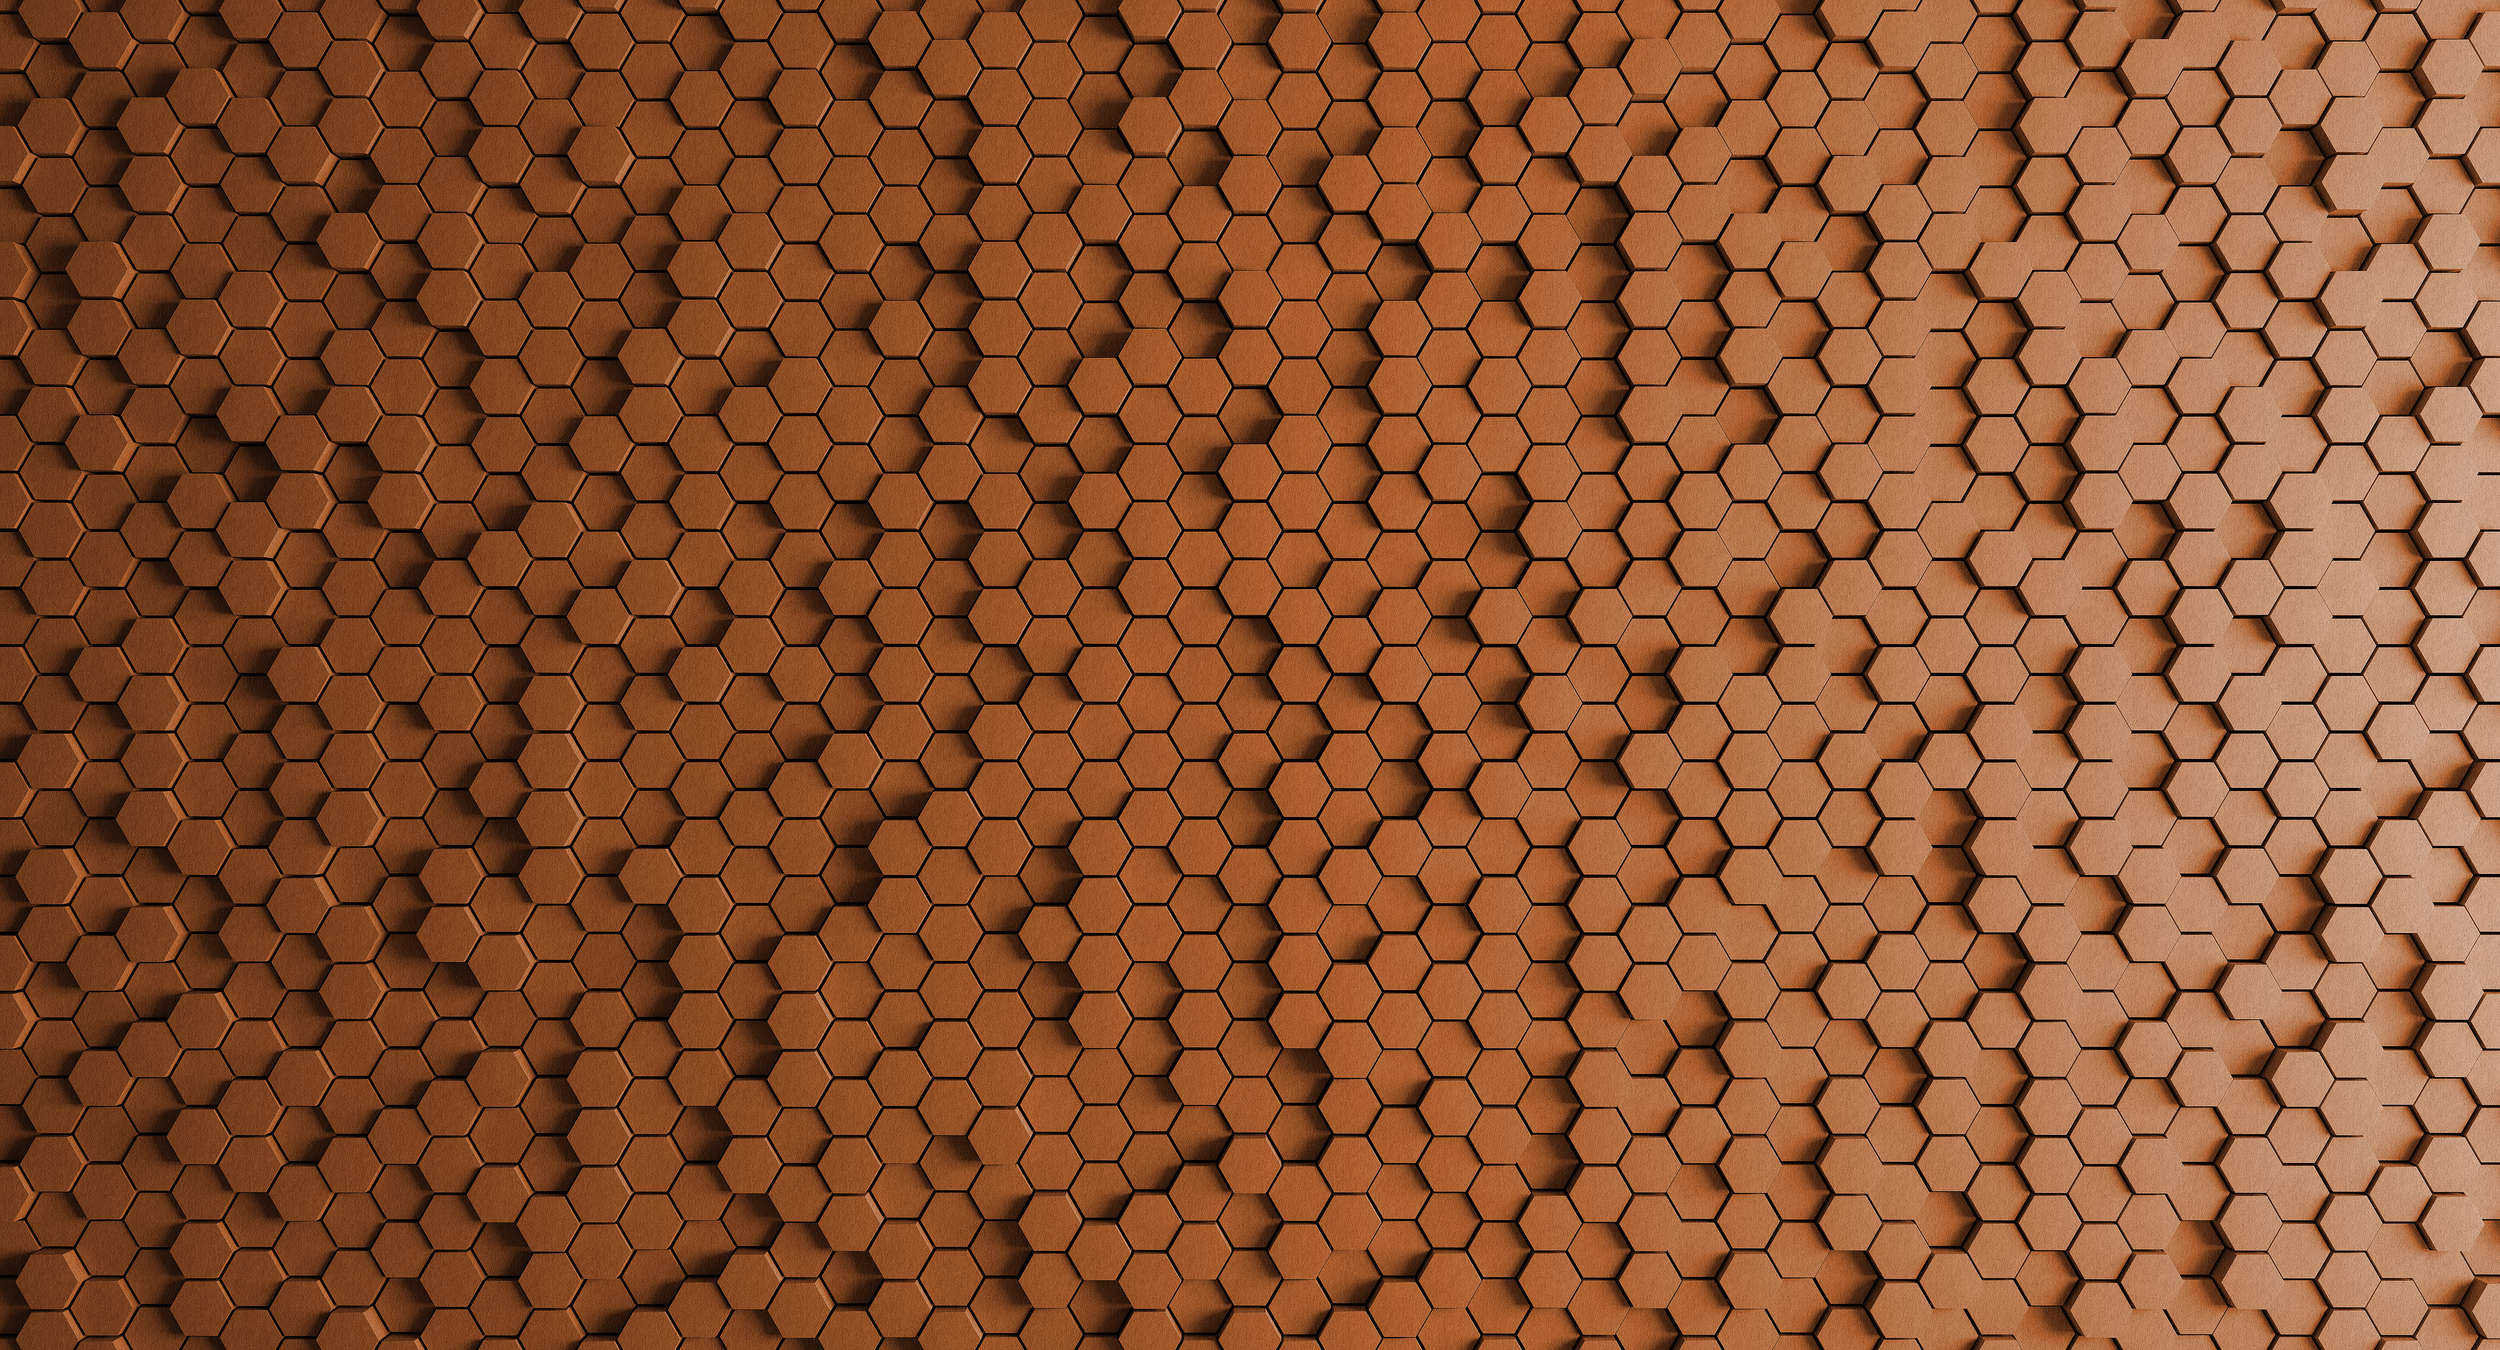             Honeycomb 2 - Papier peint 3D nid d'abeille orange - texture feutre - cuivre, orange | texture intissé
        